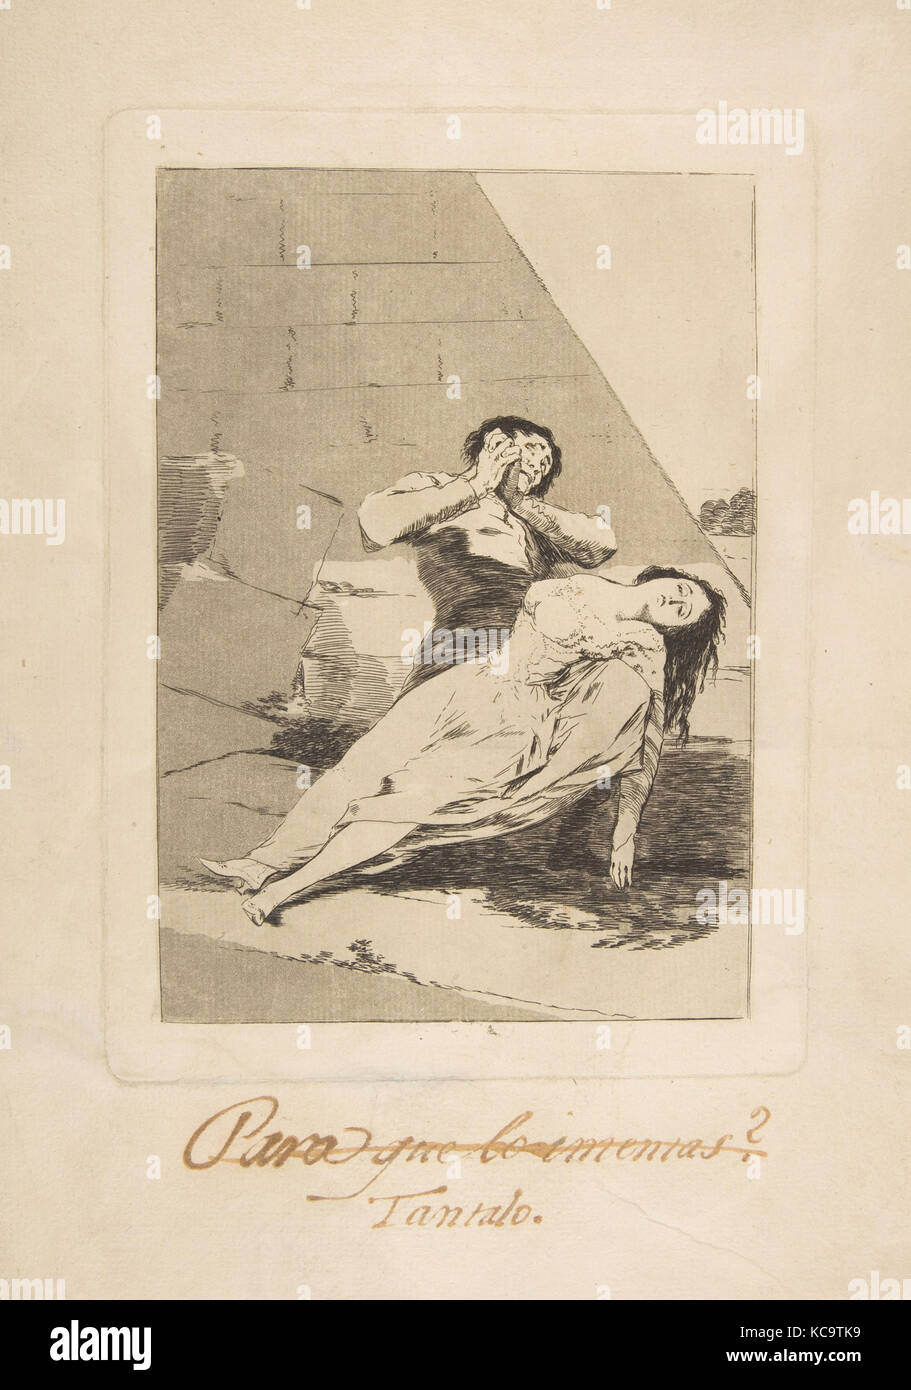 Platte 9 von 'Los Caprichos': Tantalos (tantalo.), Goya, 1799 Stockfoto